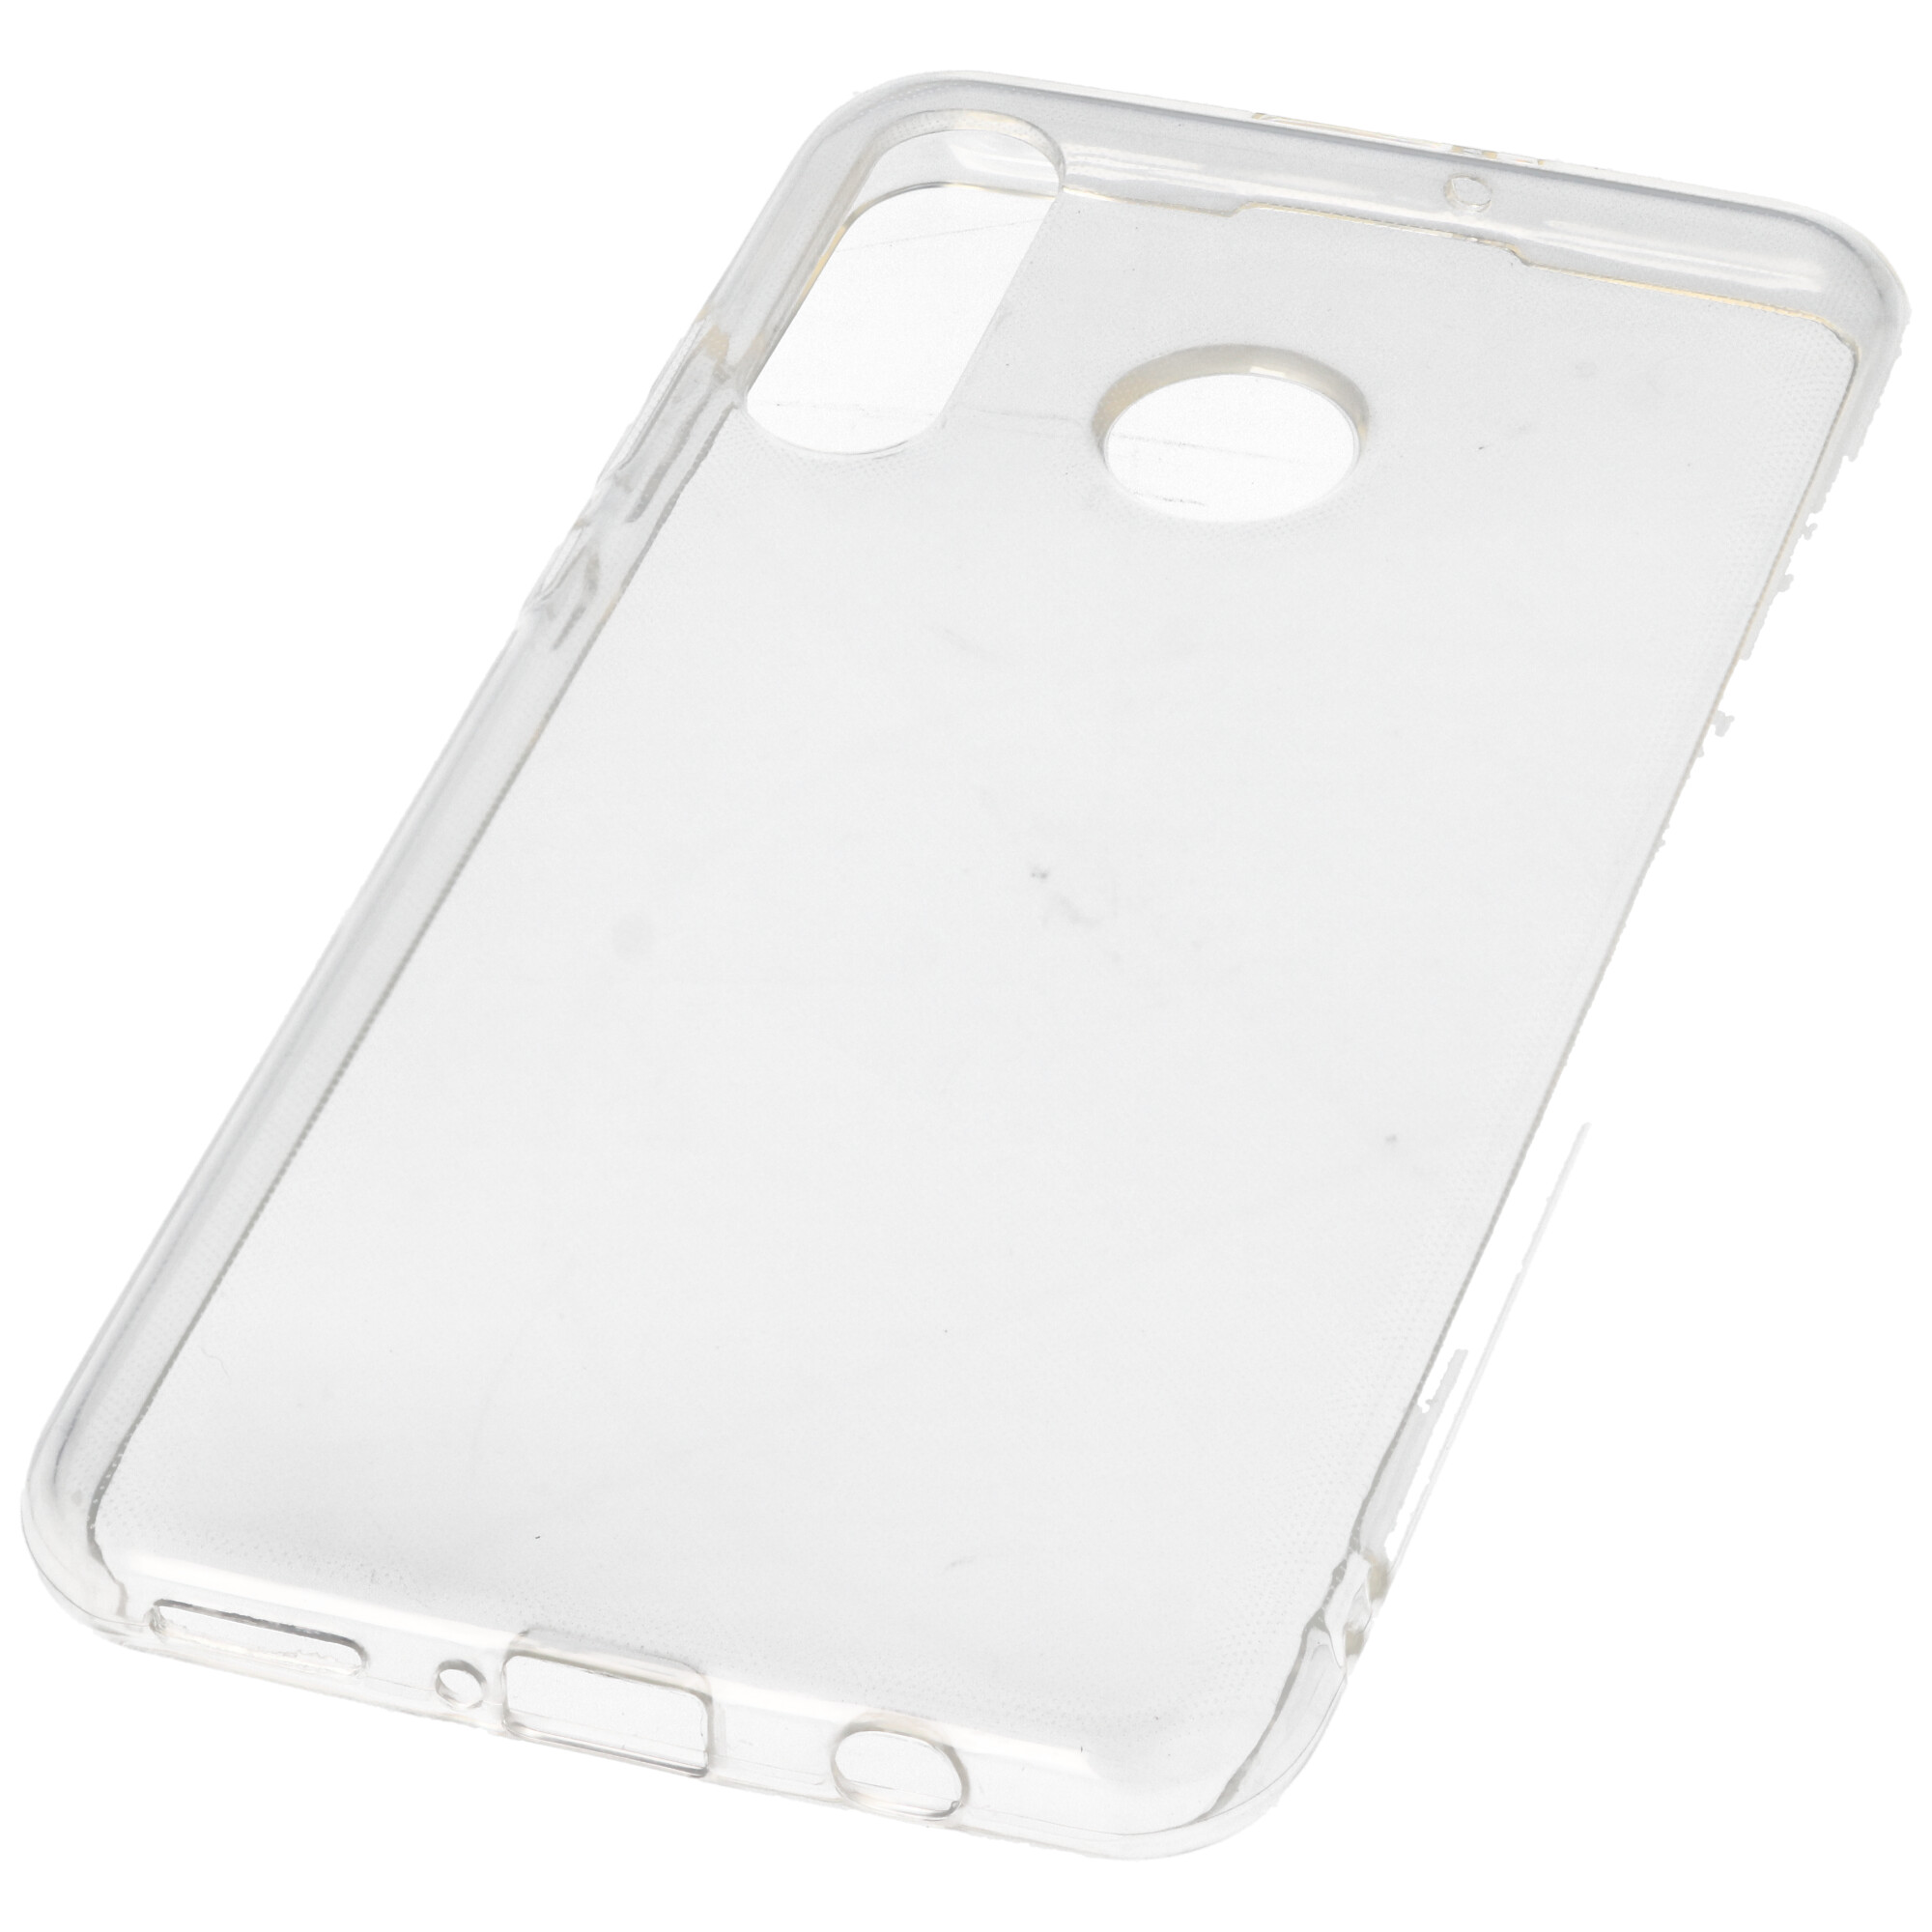 Hülle passend für Huawei P30 Lite - transparente Schutzhülle, Anti-Gelb Luftkissen Fallschutz Silikon Handyhülle robustes TPU Case